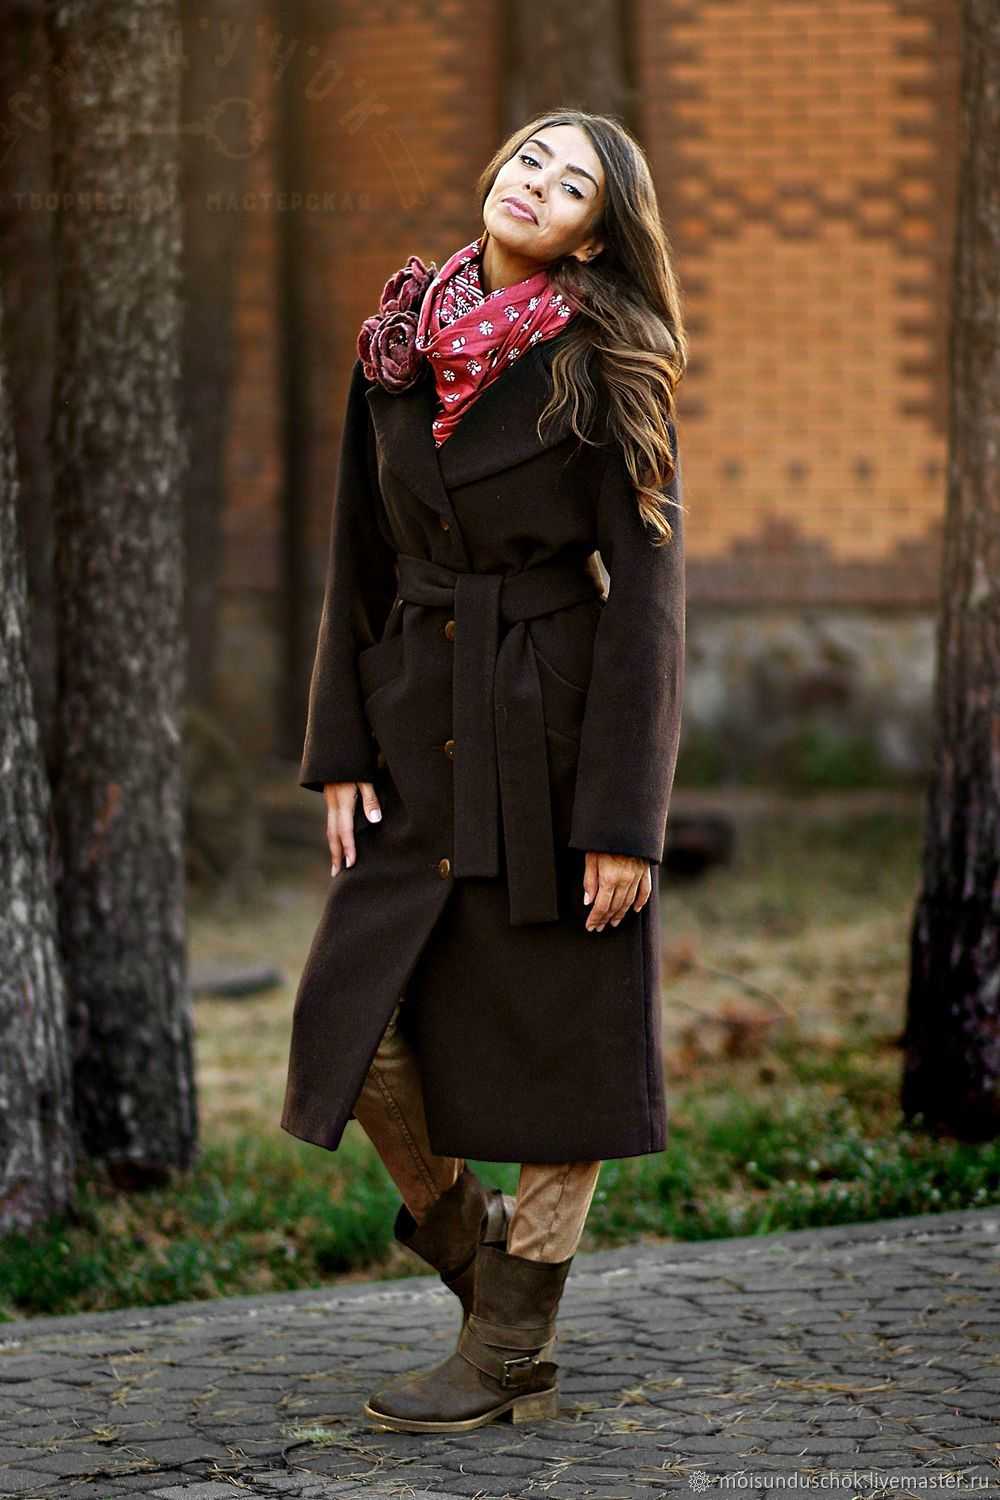 Зимнее женское пальто 2019-2020 – длинное, короткое, с капюшоном, мехом, пуховое, стеганое, кожаное, с чем носить, образы